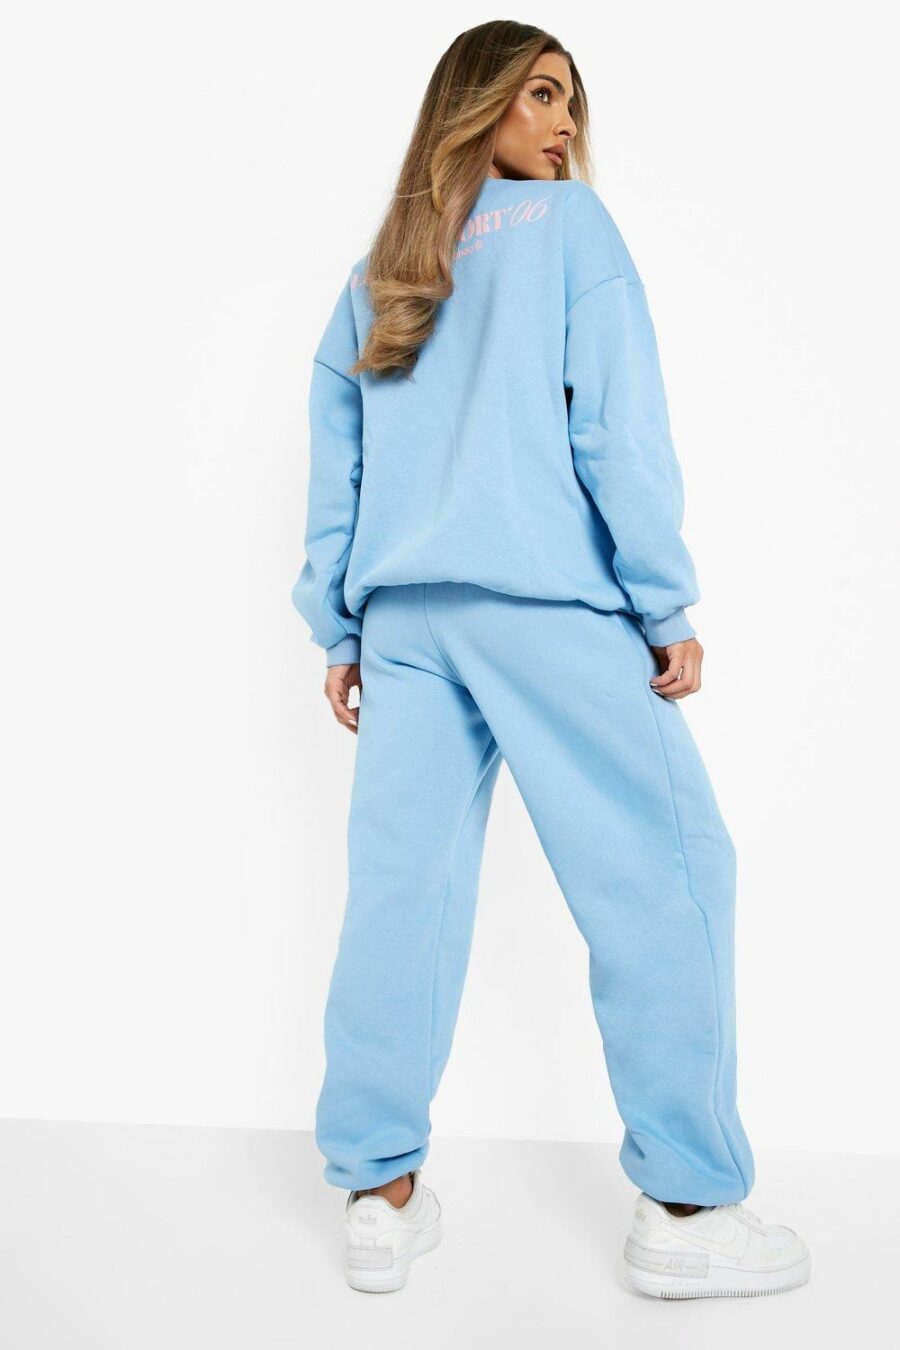 Boohoo-niebieskie-damskie-spodnie-dresowe-joggery-Luxury-Sport-XS